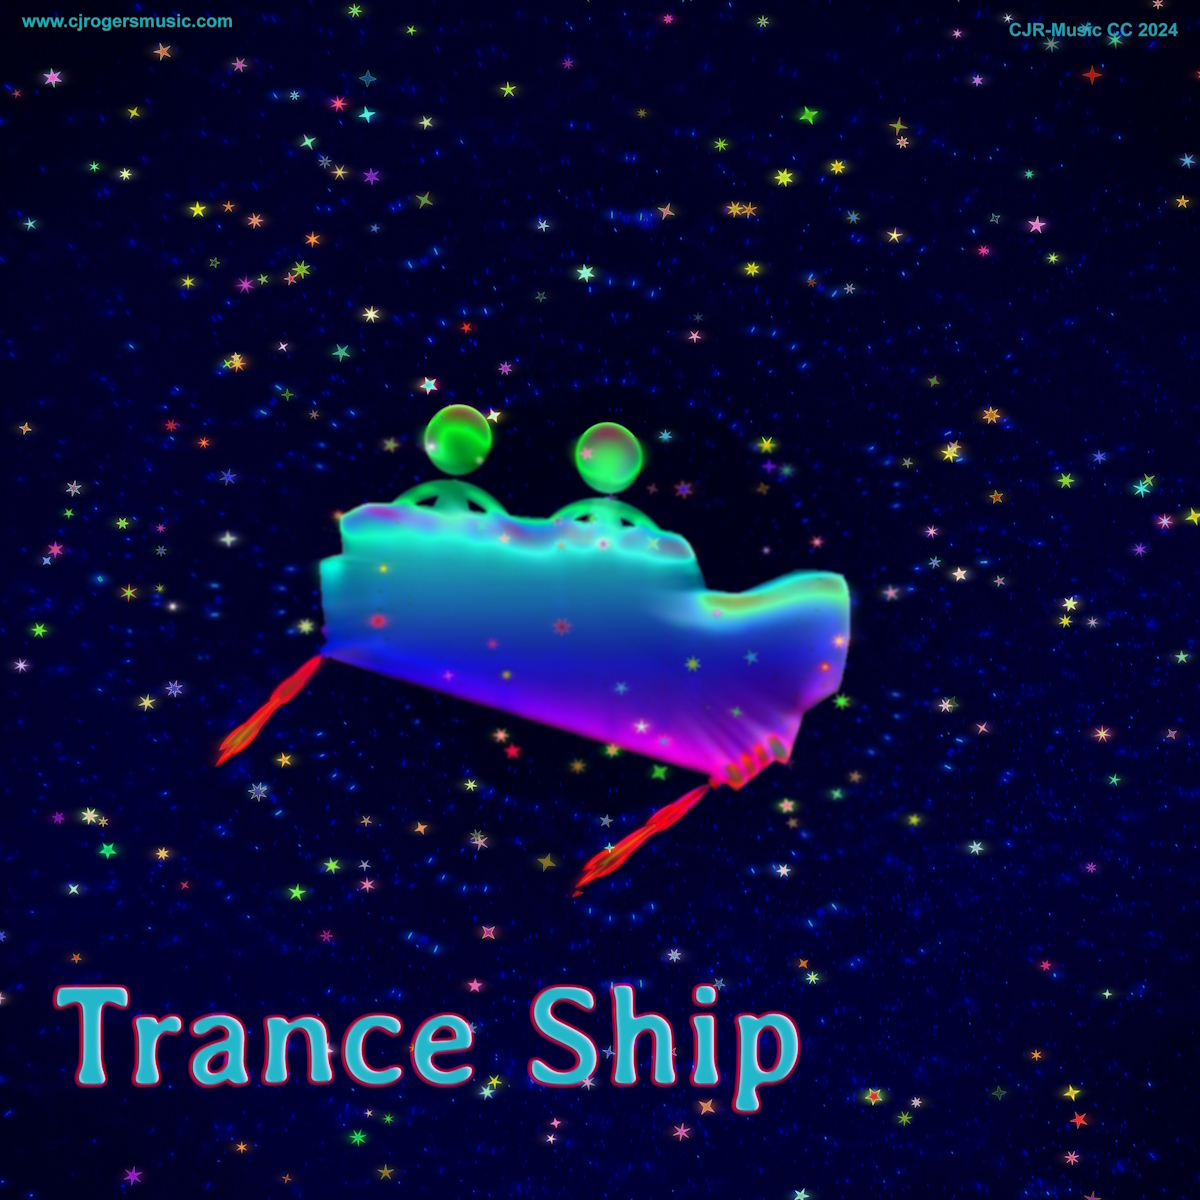 Trance Ship - Fullsize Cover Art